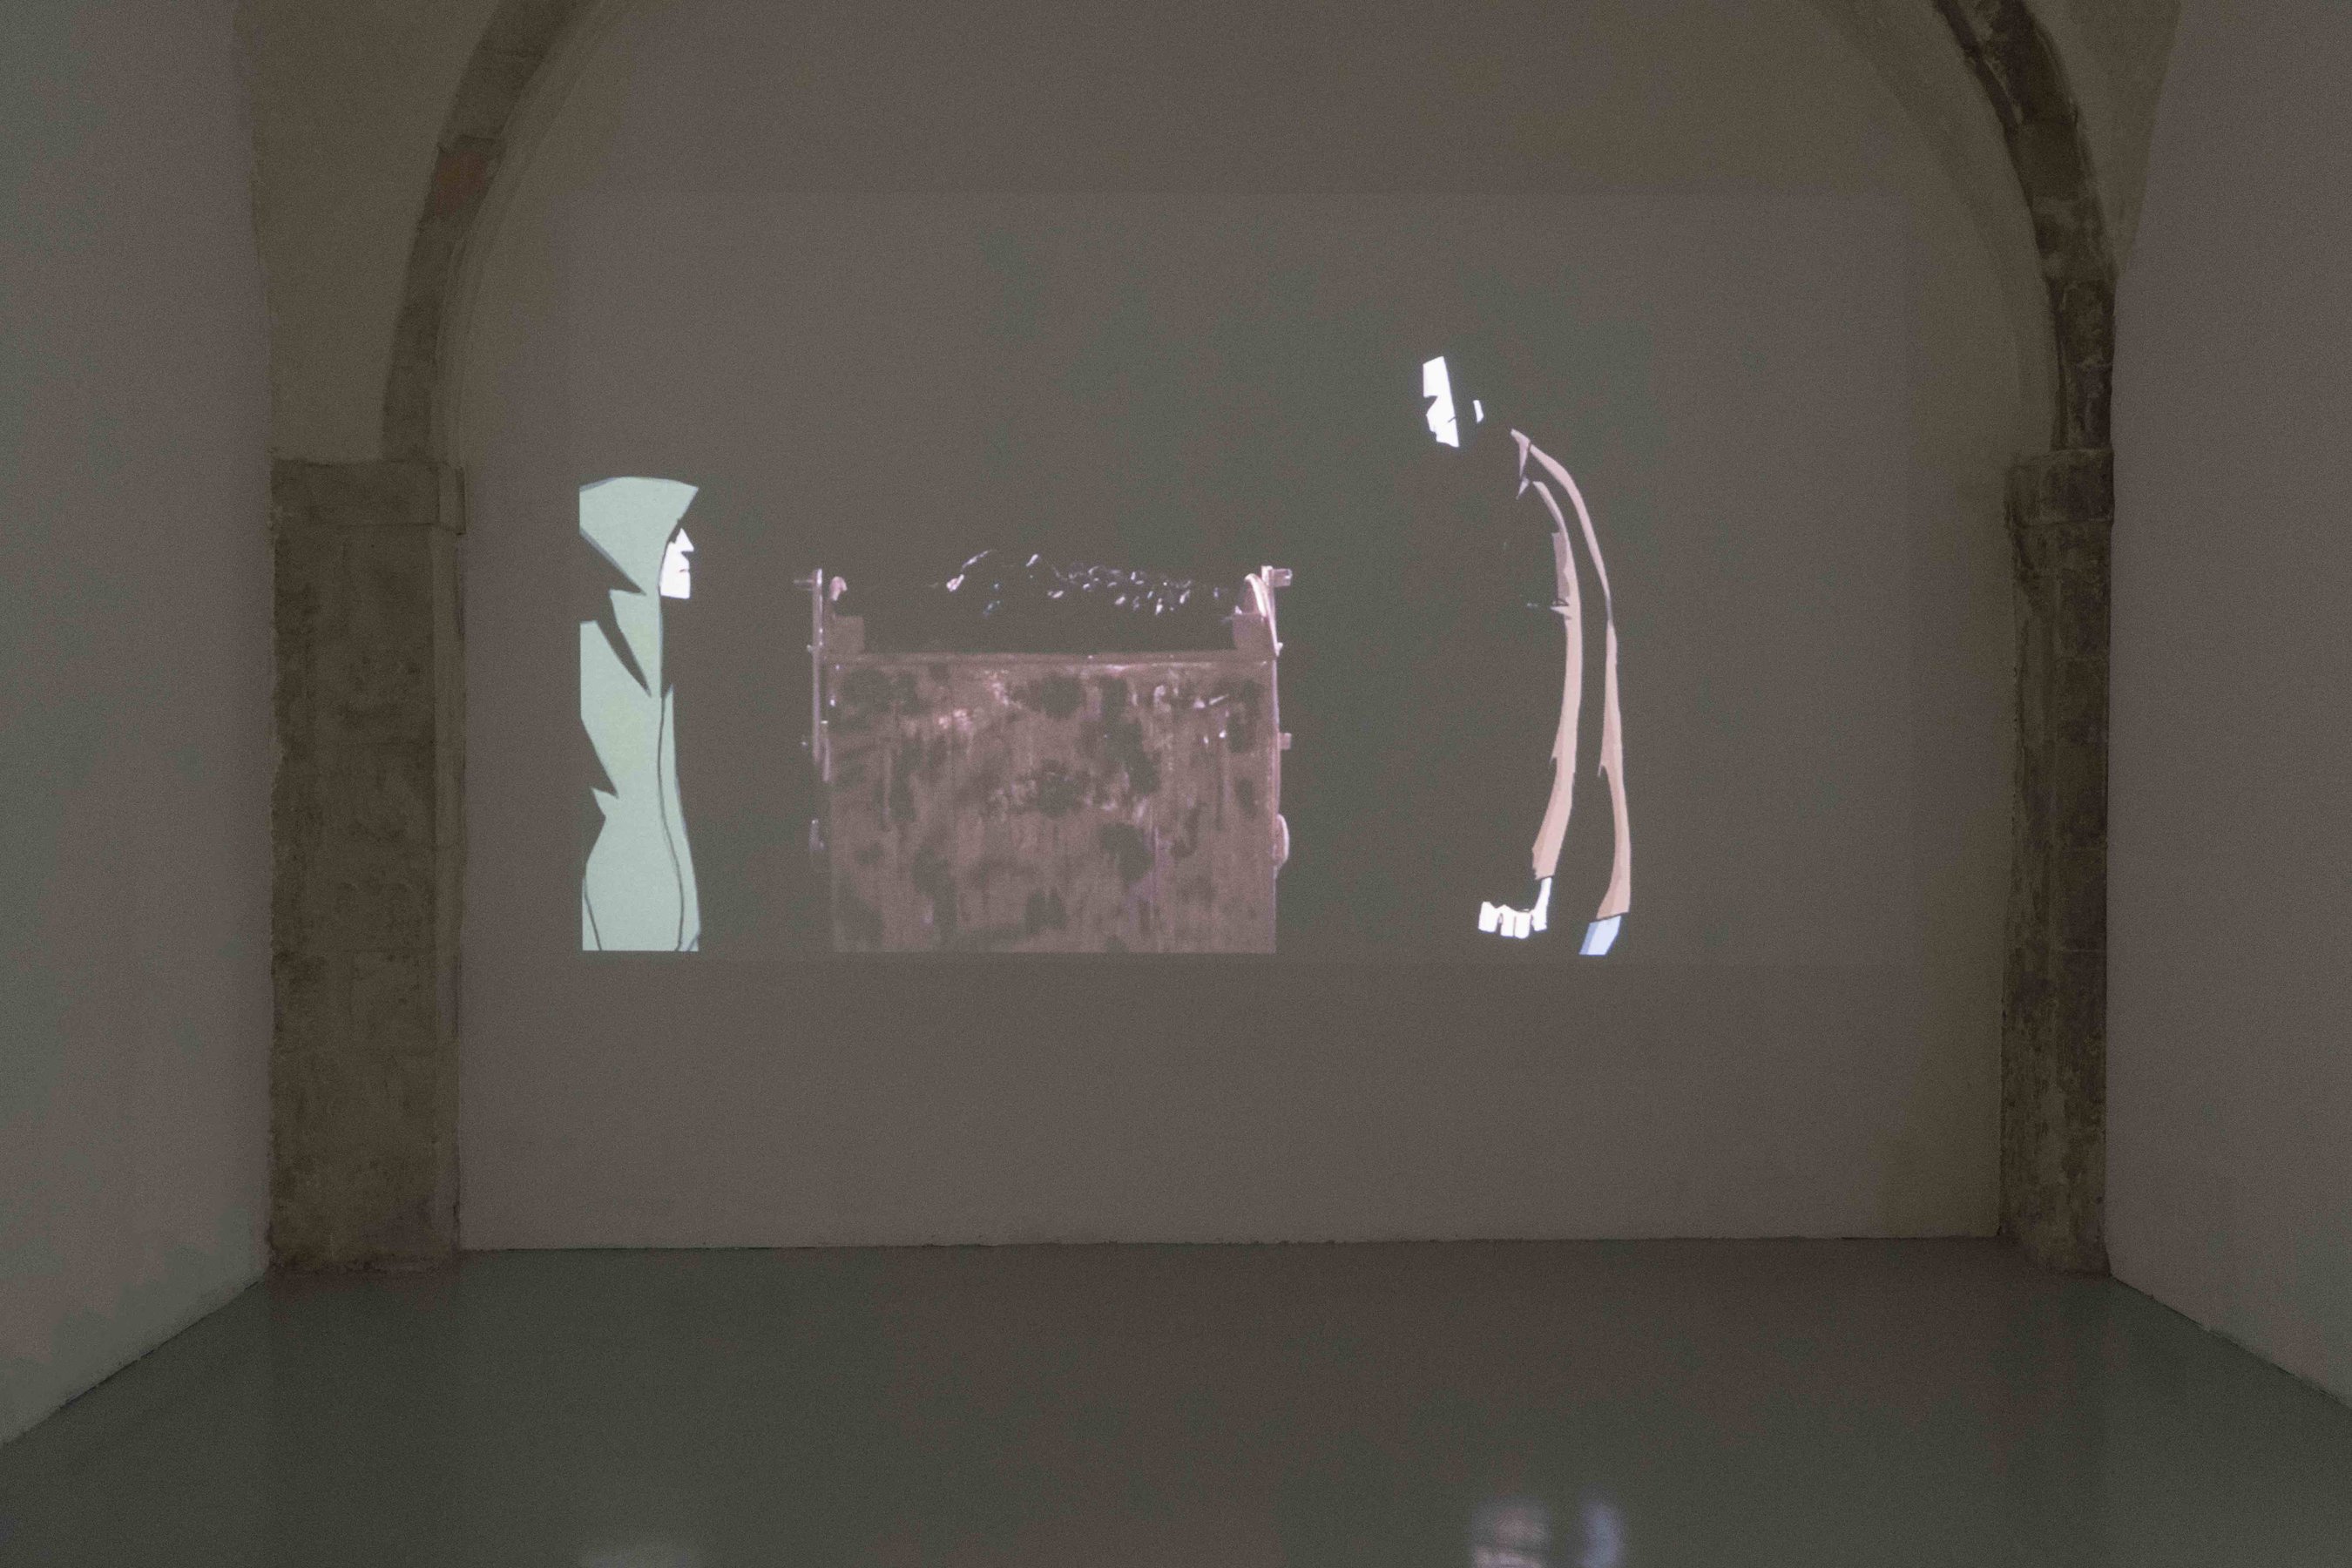 installation view at Laveronica arte contemporanea